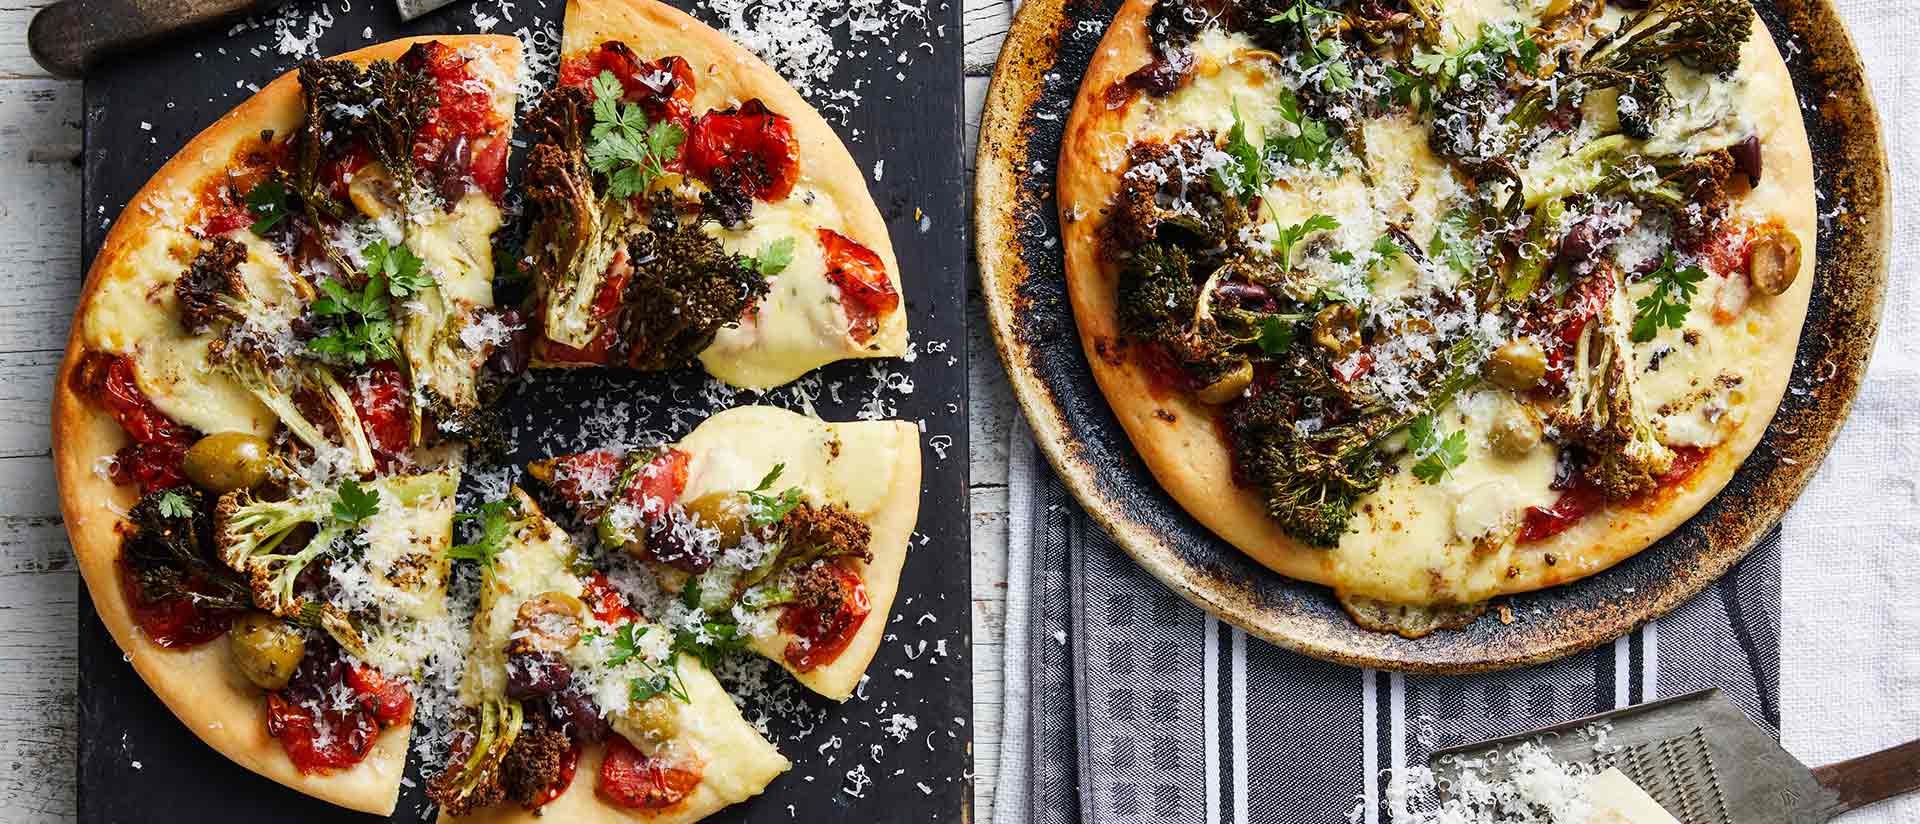 Vegetarian Roasted Broccolini Fioretto Pizza Recipe